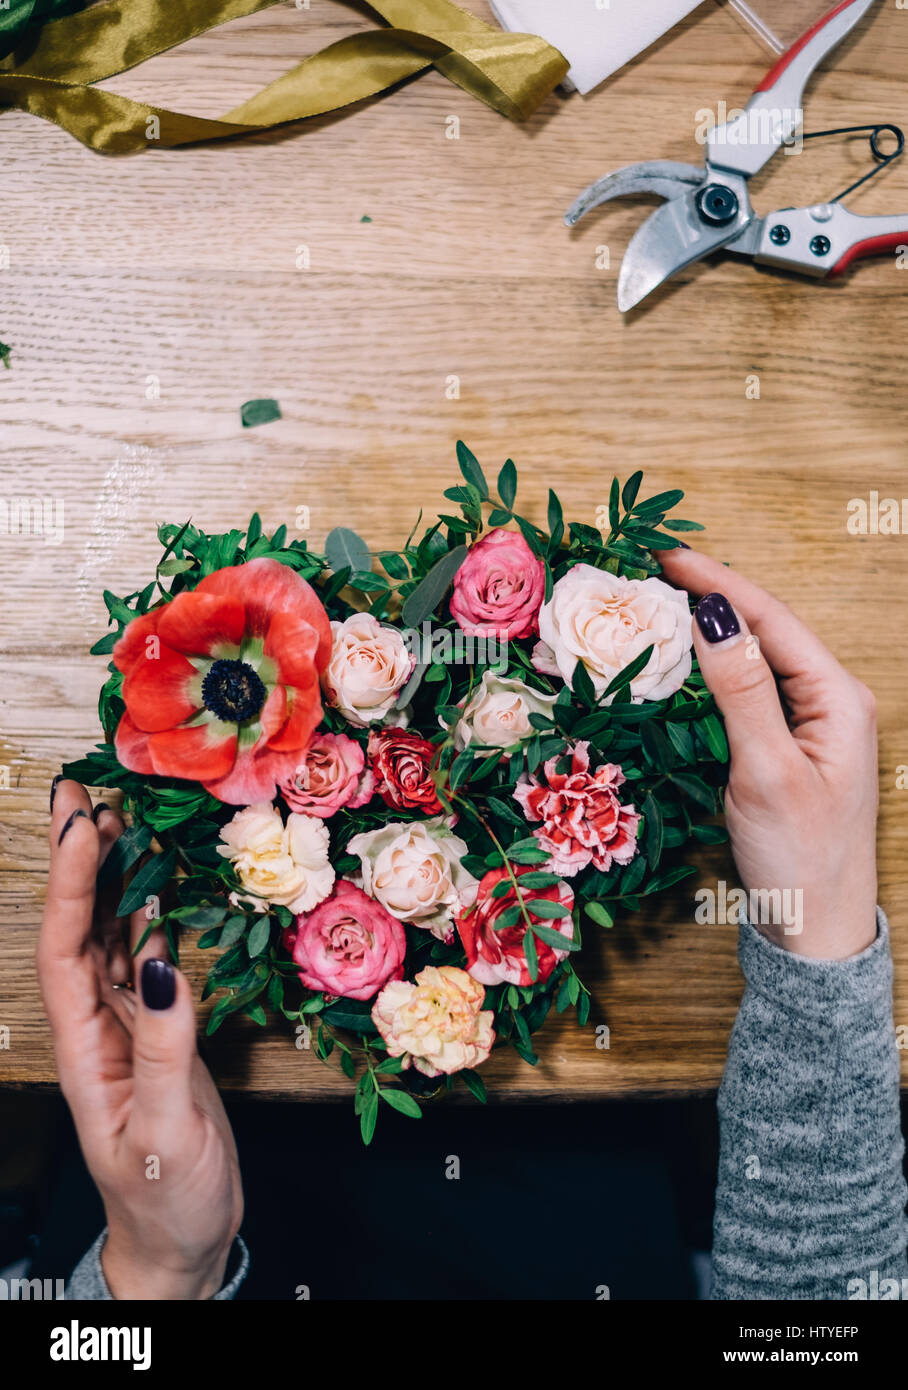 Woman making a flower arrangement Stock Photo